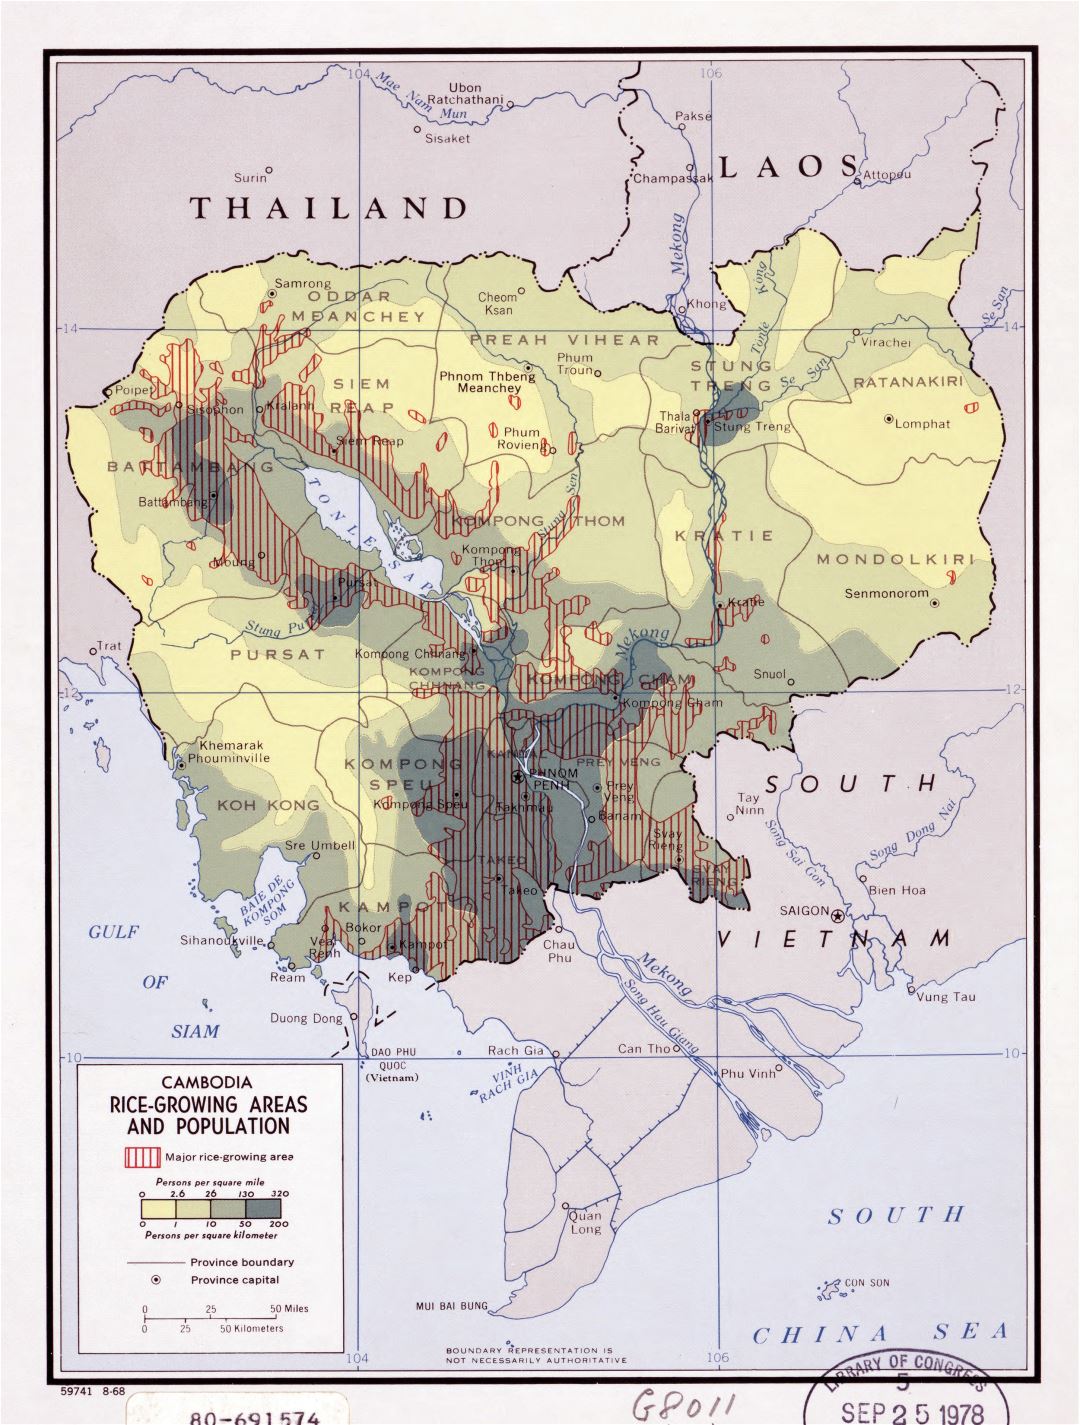 Большая детальная карта районов выращивания риса и карта населения Камбоджи - 1968